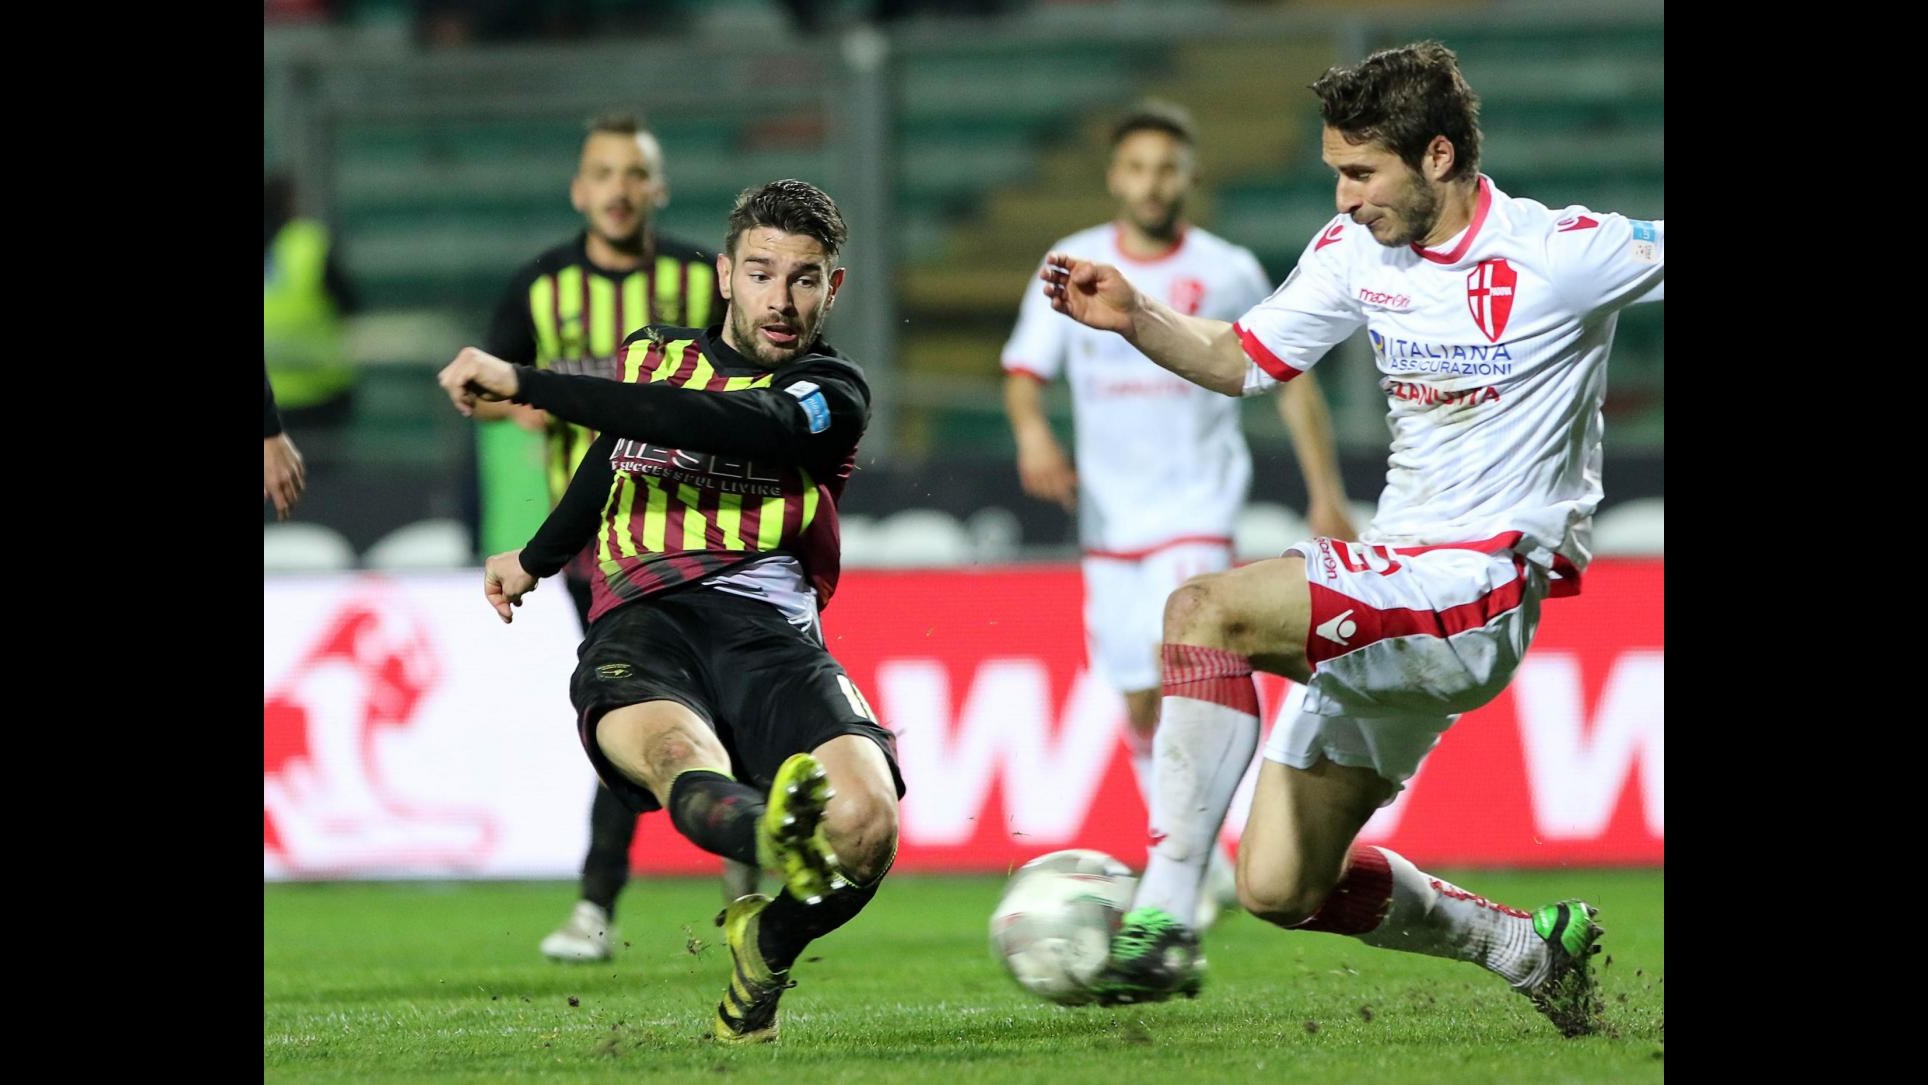 FOTO Lega Pro, Padova vince derby con Bassano 1-0